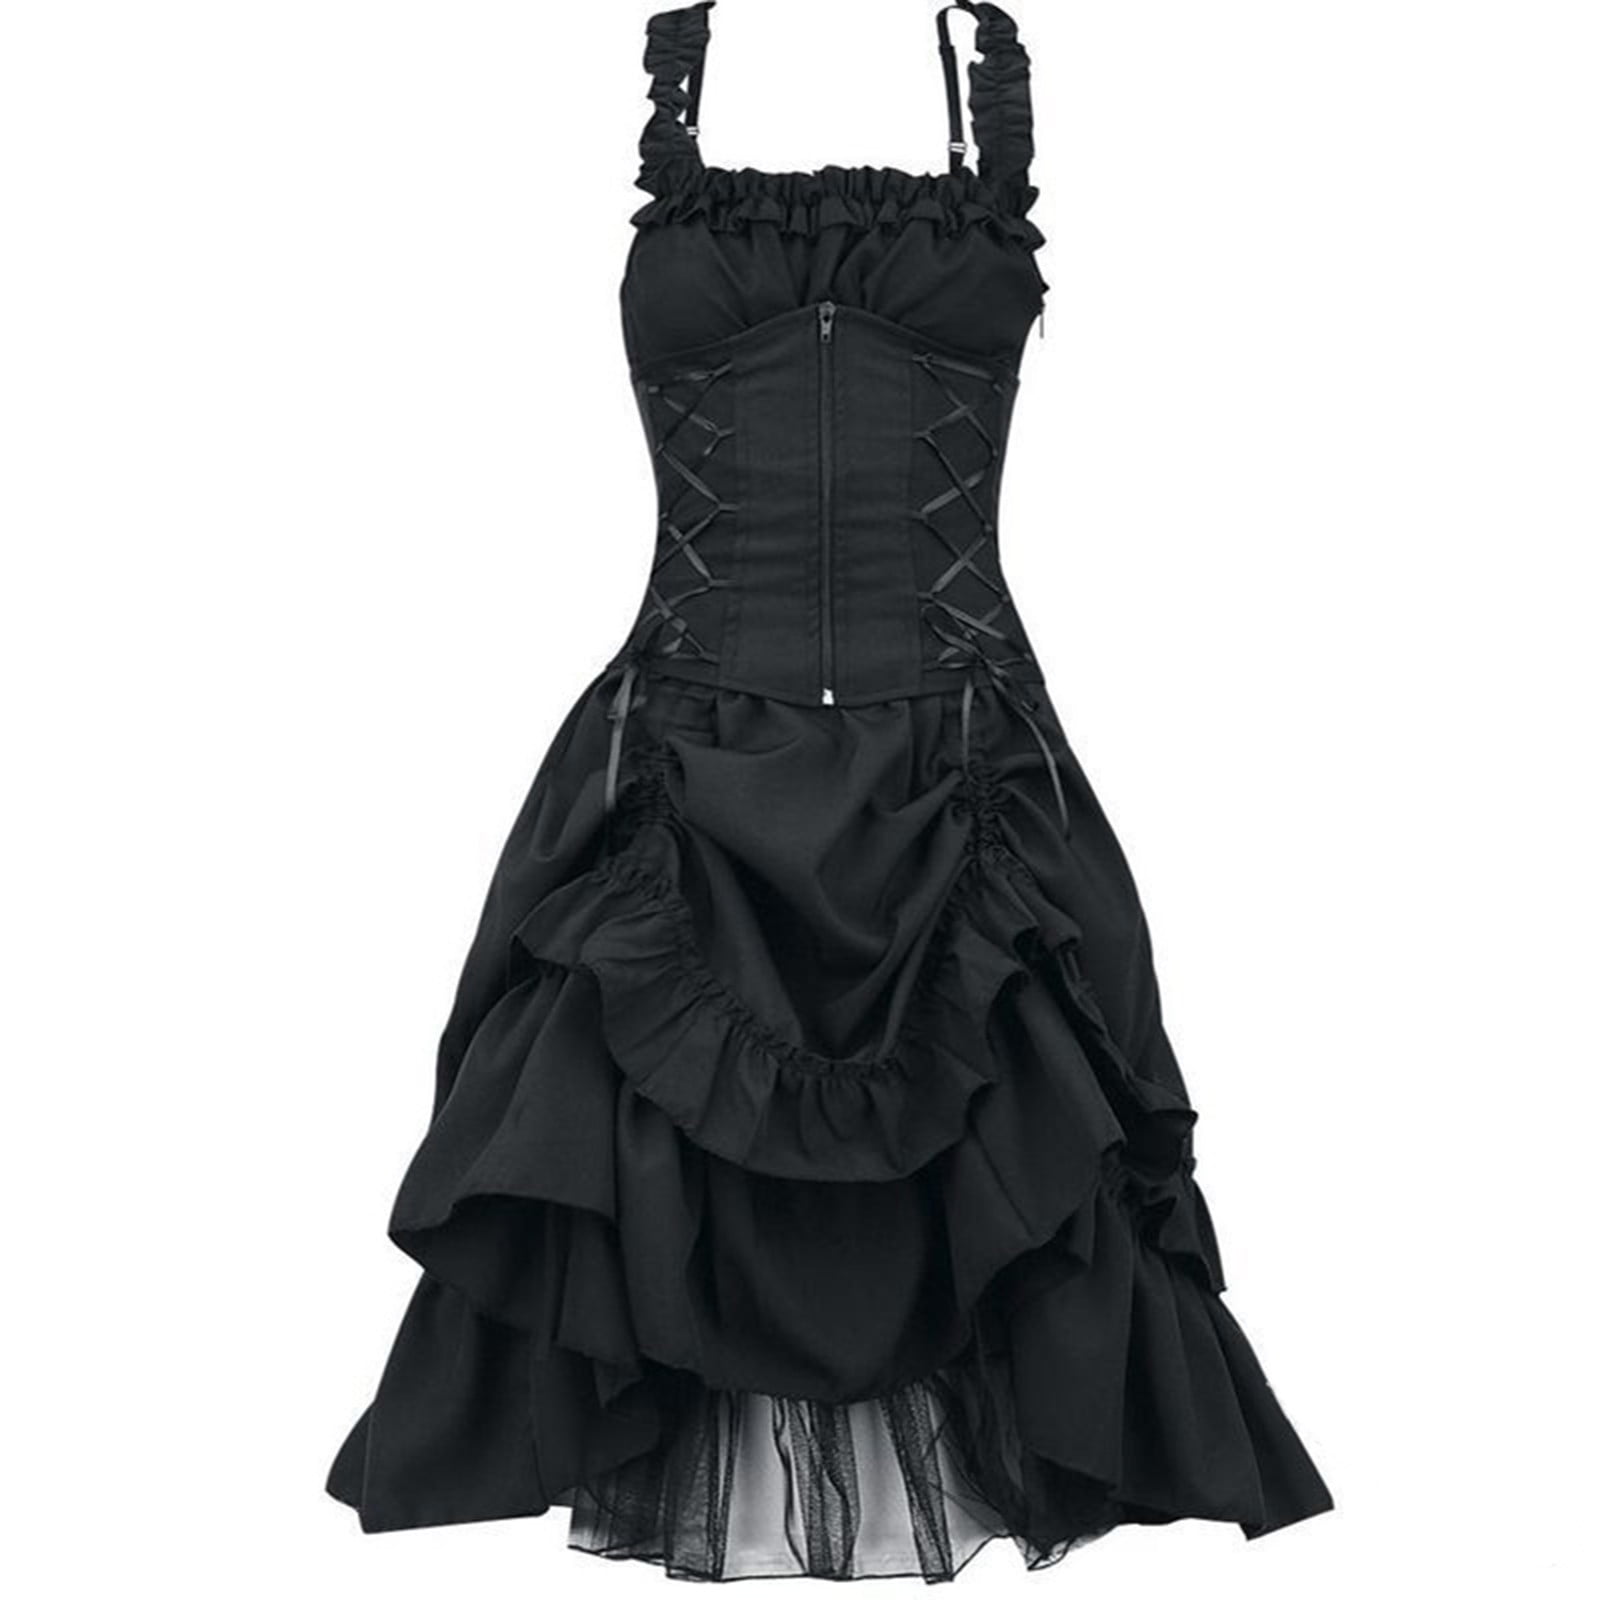 Clearanceï¼ Women's Sleeveless Long Gothic Dress With Corset Steampunk  Strappy Layers Dress Zipper Corset Square Neck Ruffled Skirt Lace Long  Dress - Walmart.com